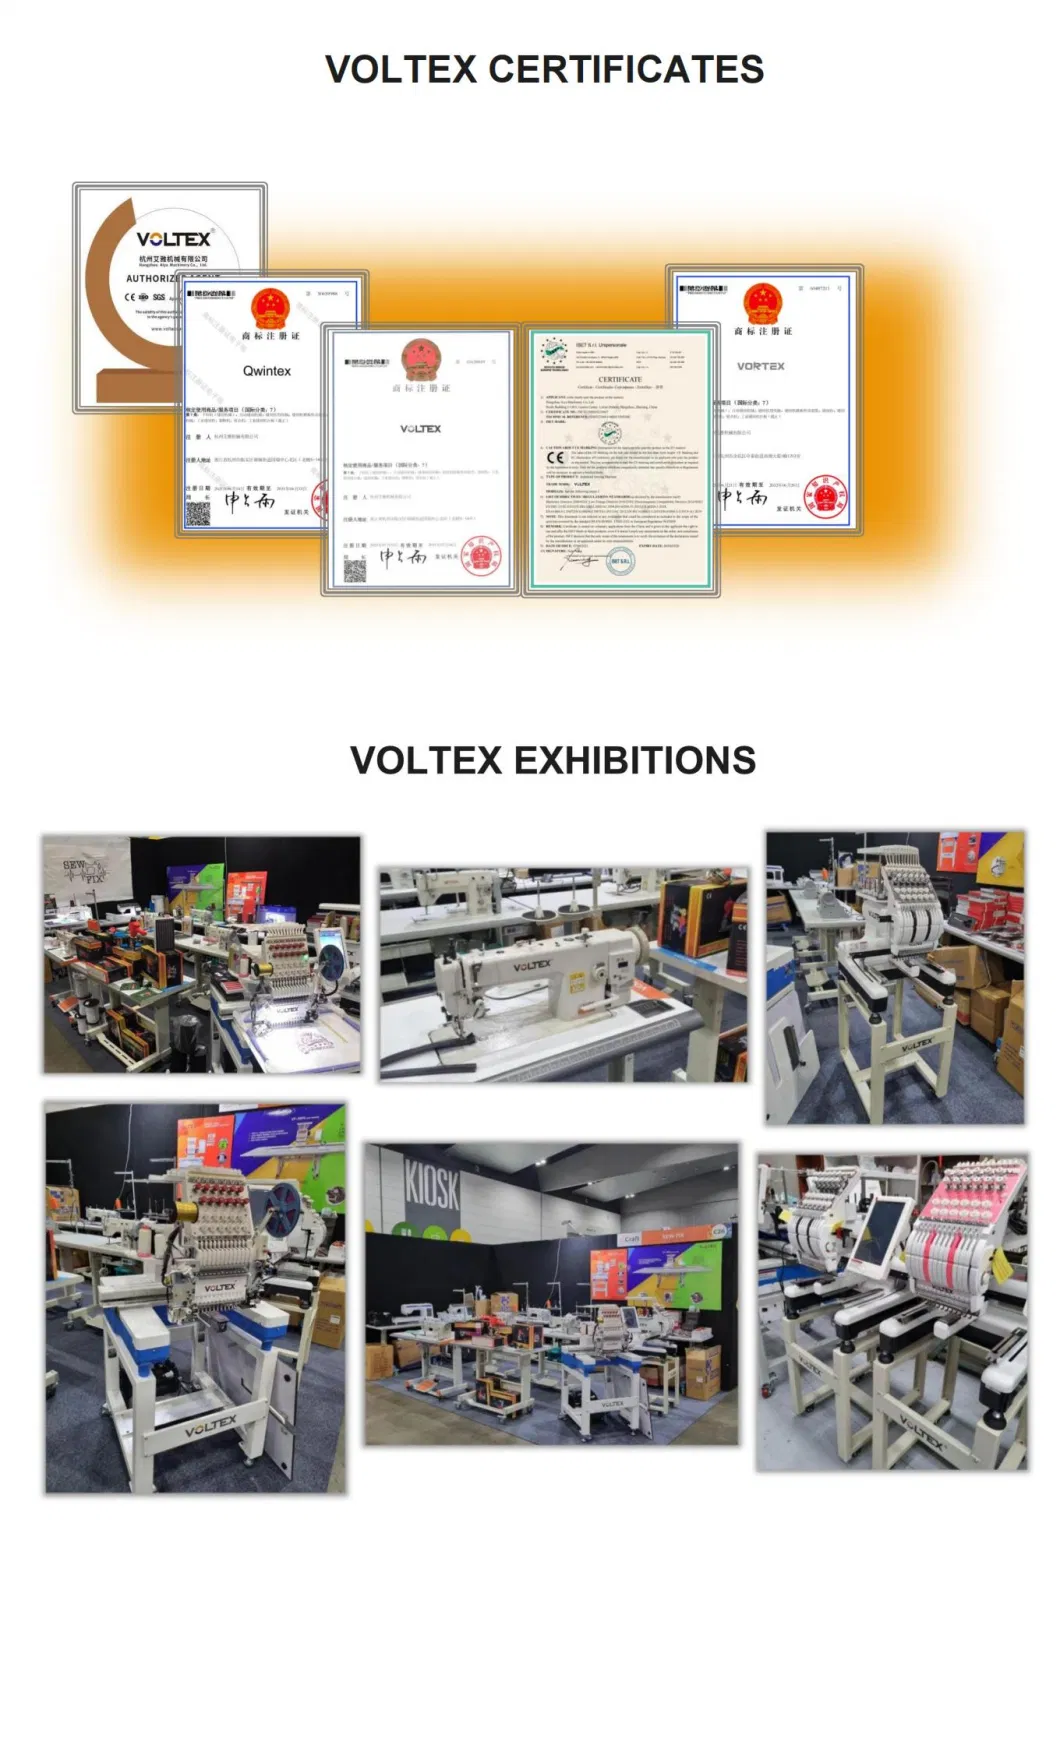 Voltex Vt-500d-01CB-Ut Interlock Sewing Machine Cover Stitch